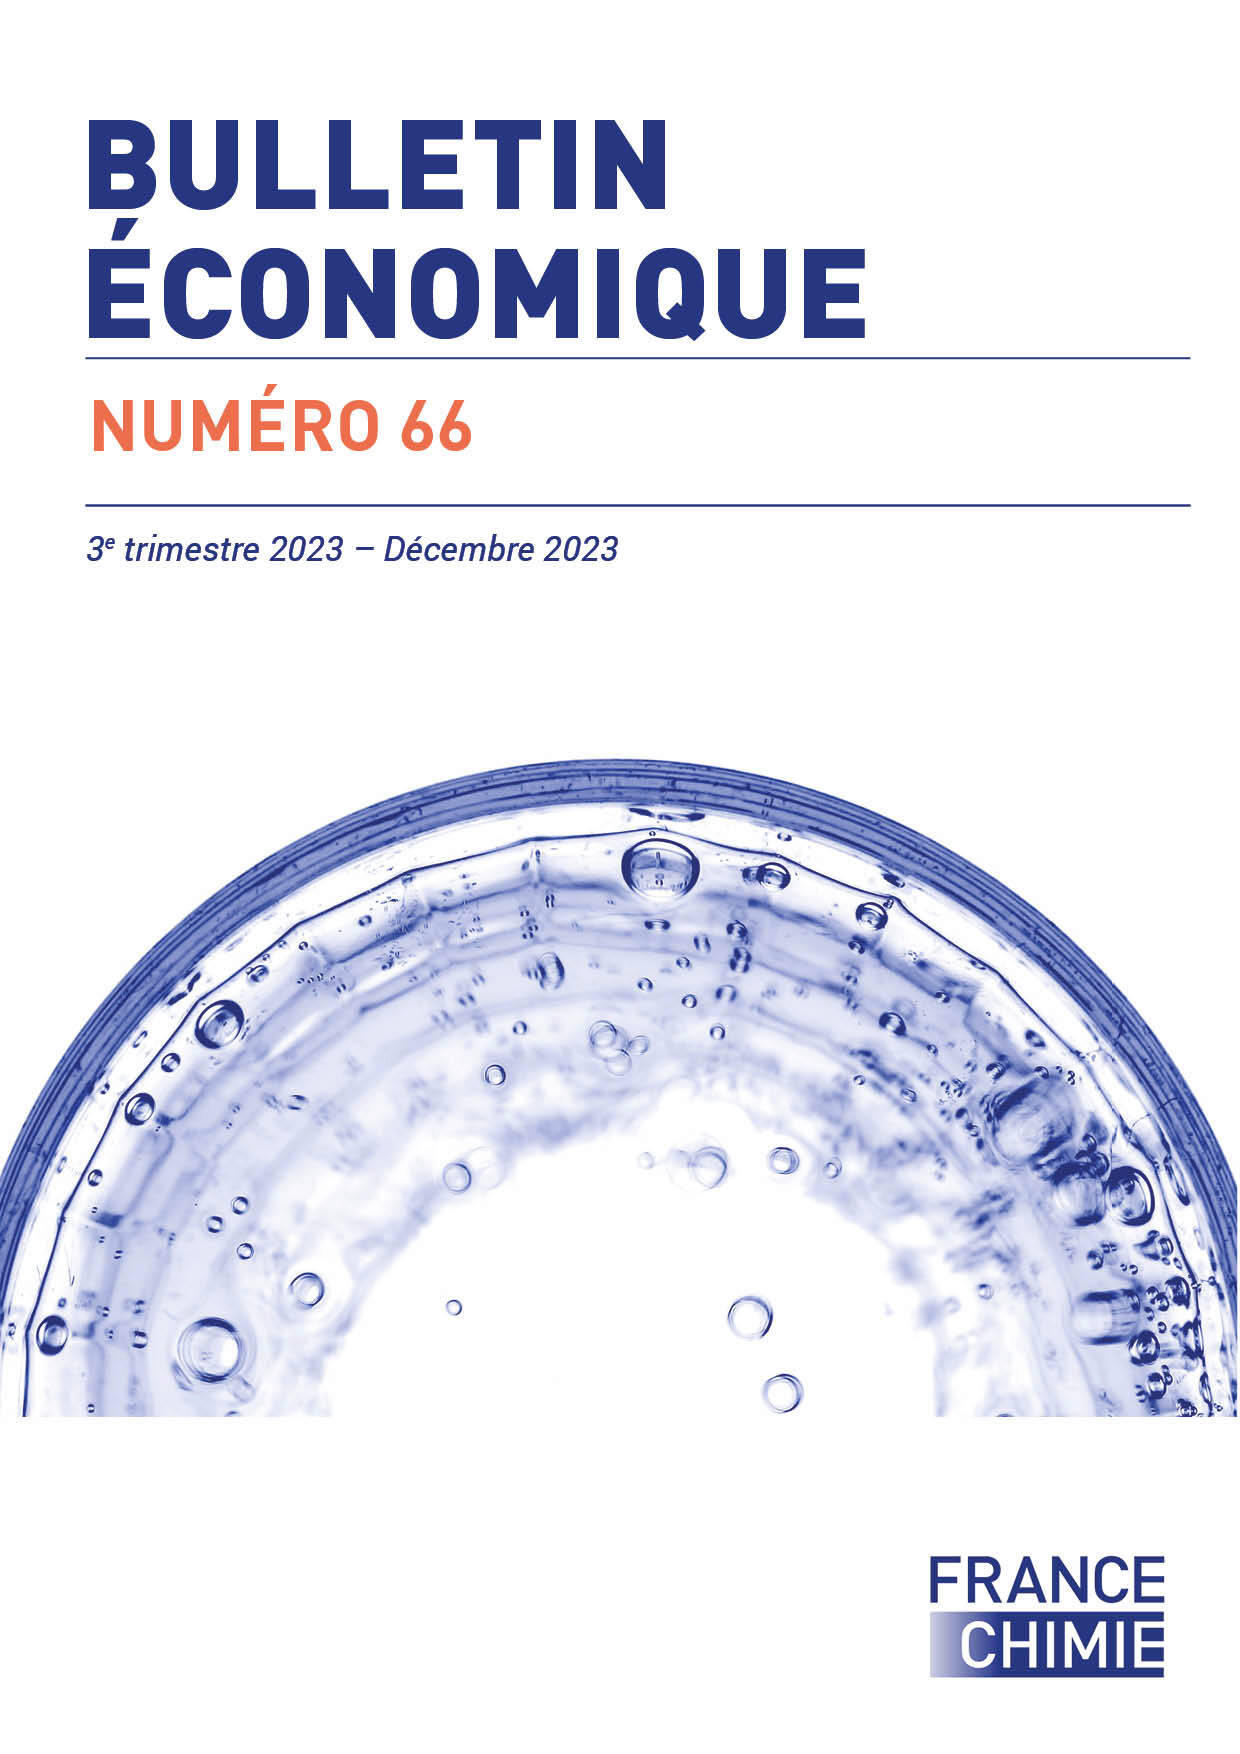 Bulletin économique - 3e trimestre 2023